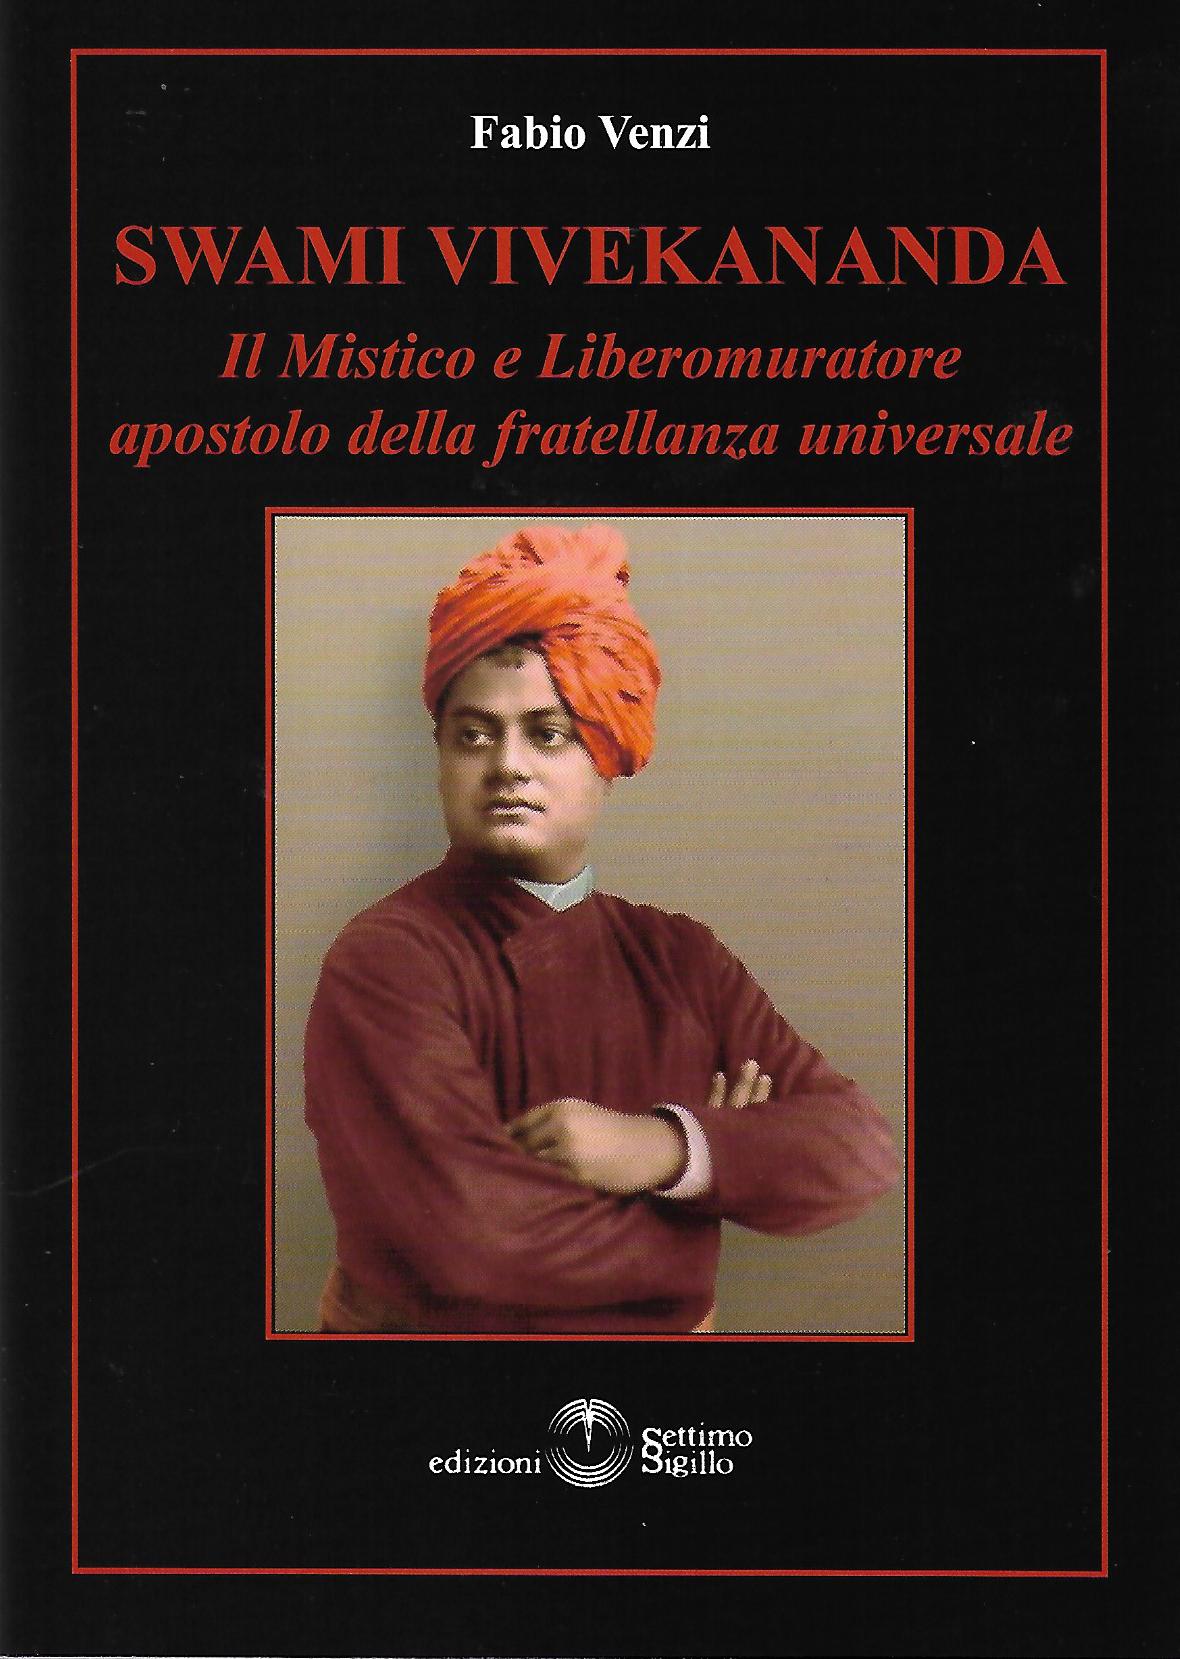 Swami Vivekananda - Fabio Venzi